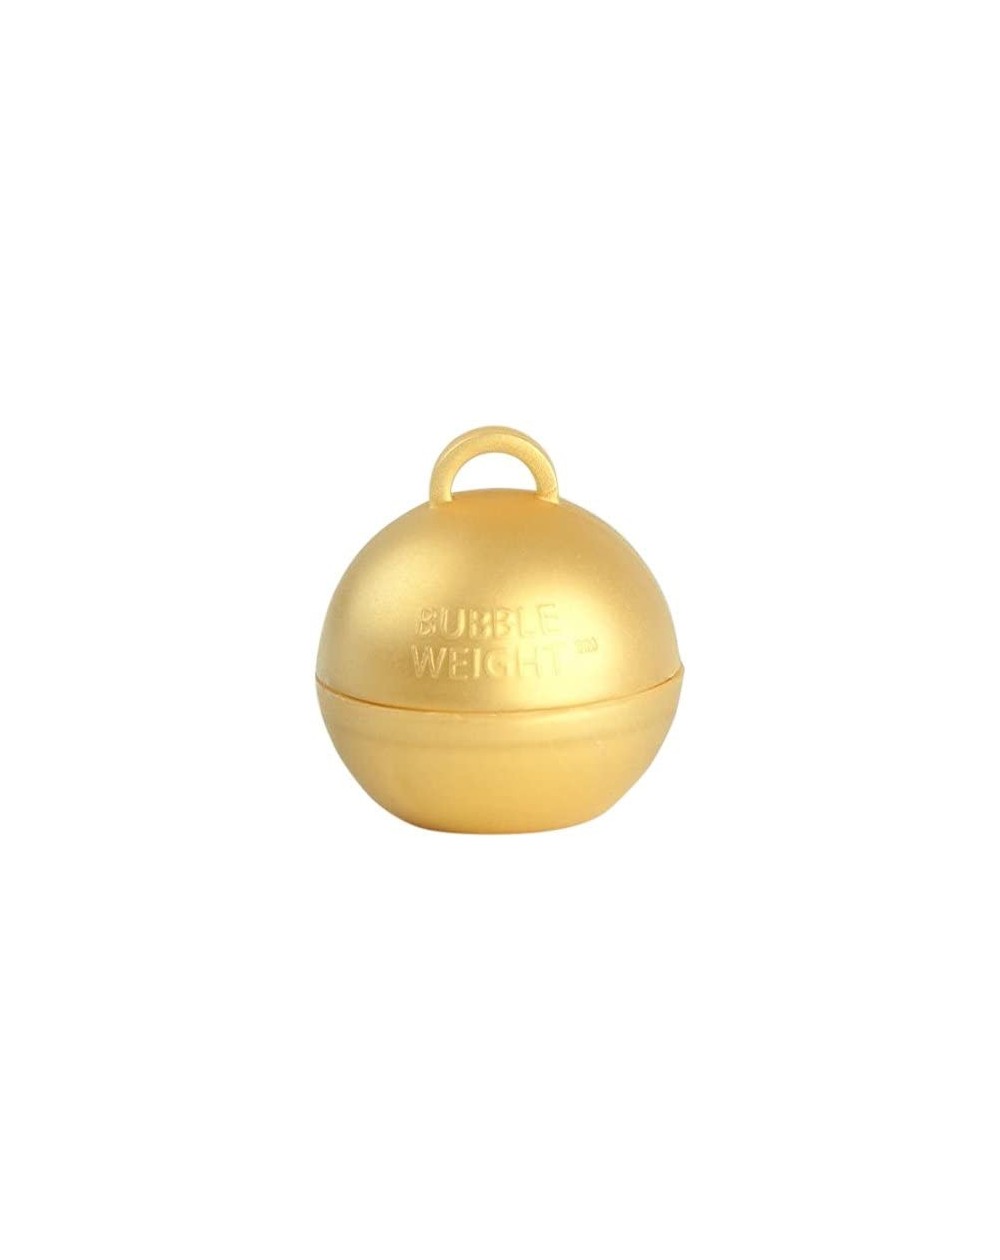 Balloons Bubble Weight Balloon Weight- 35g- Metallic Gold- 10 Piece - Metallic Gold - CF11N9ECTQ9 $12.88